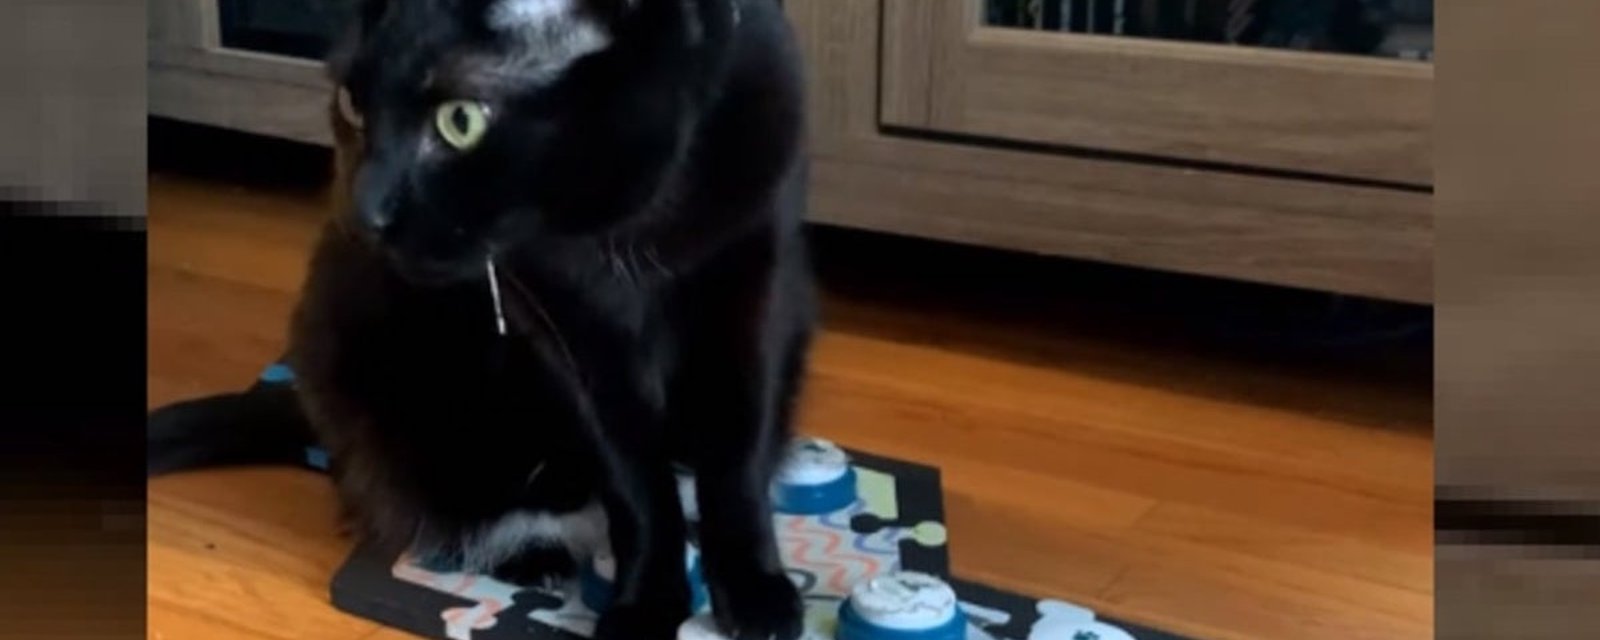 Une femme qui a appris à son chat à communiquer avec un appareil regrette maintenant son initiative